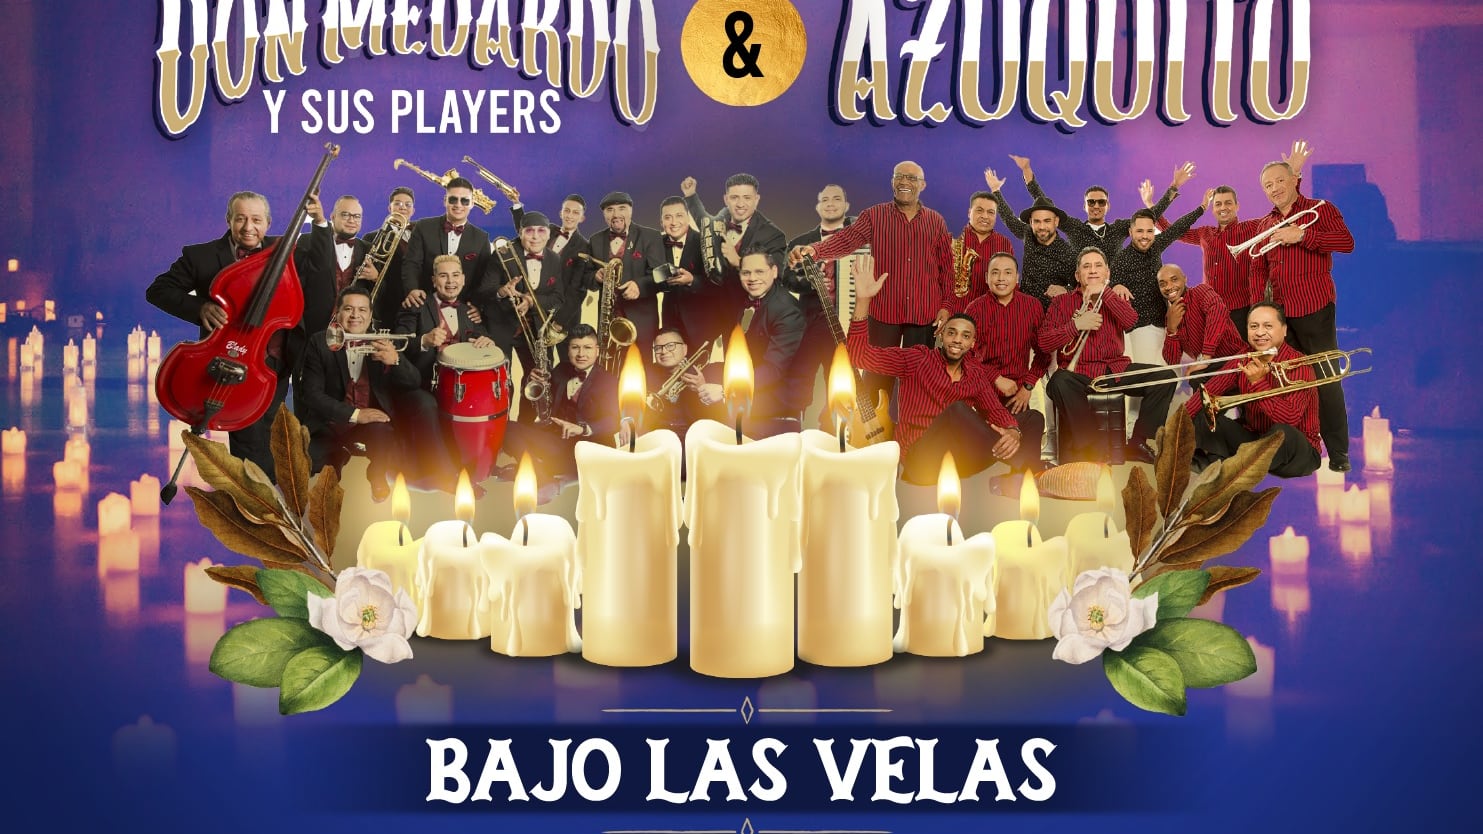 Don Medardo y sus Players & Azuquito - Bajo las velas